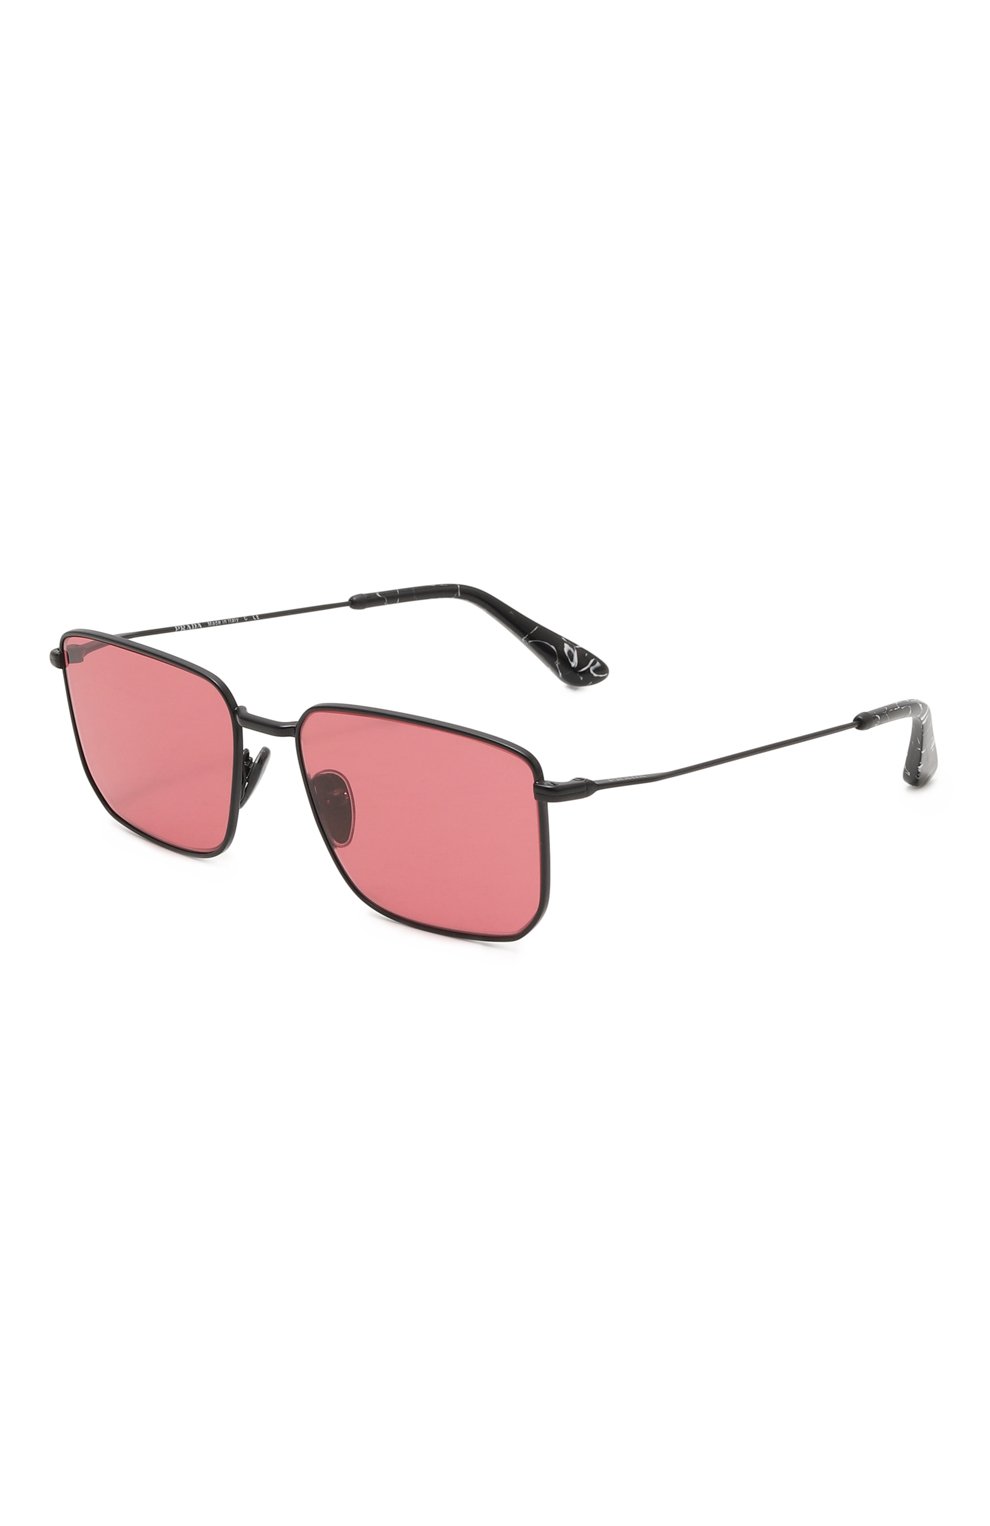 Мужские розовые солнцезащитные очки PRADA купить в интернет-магазине